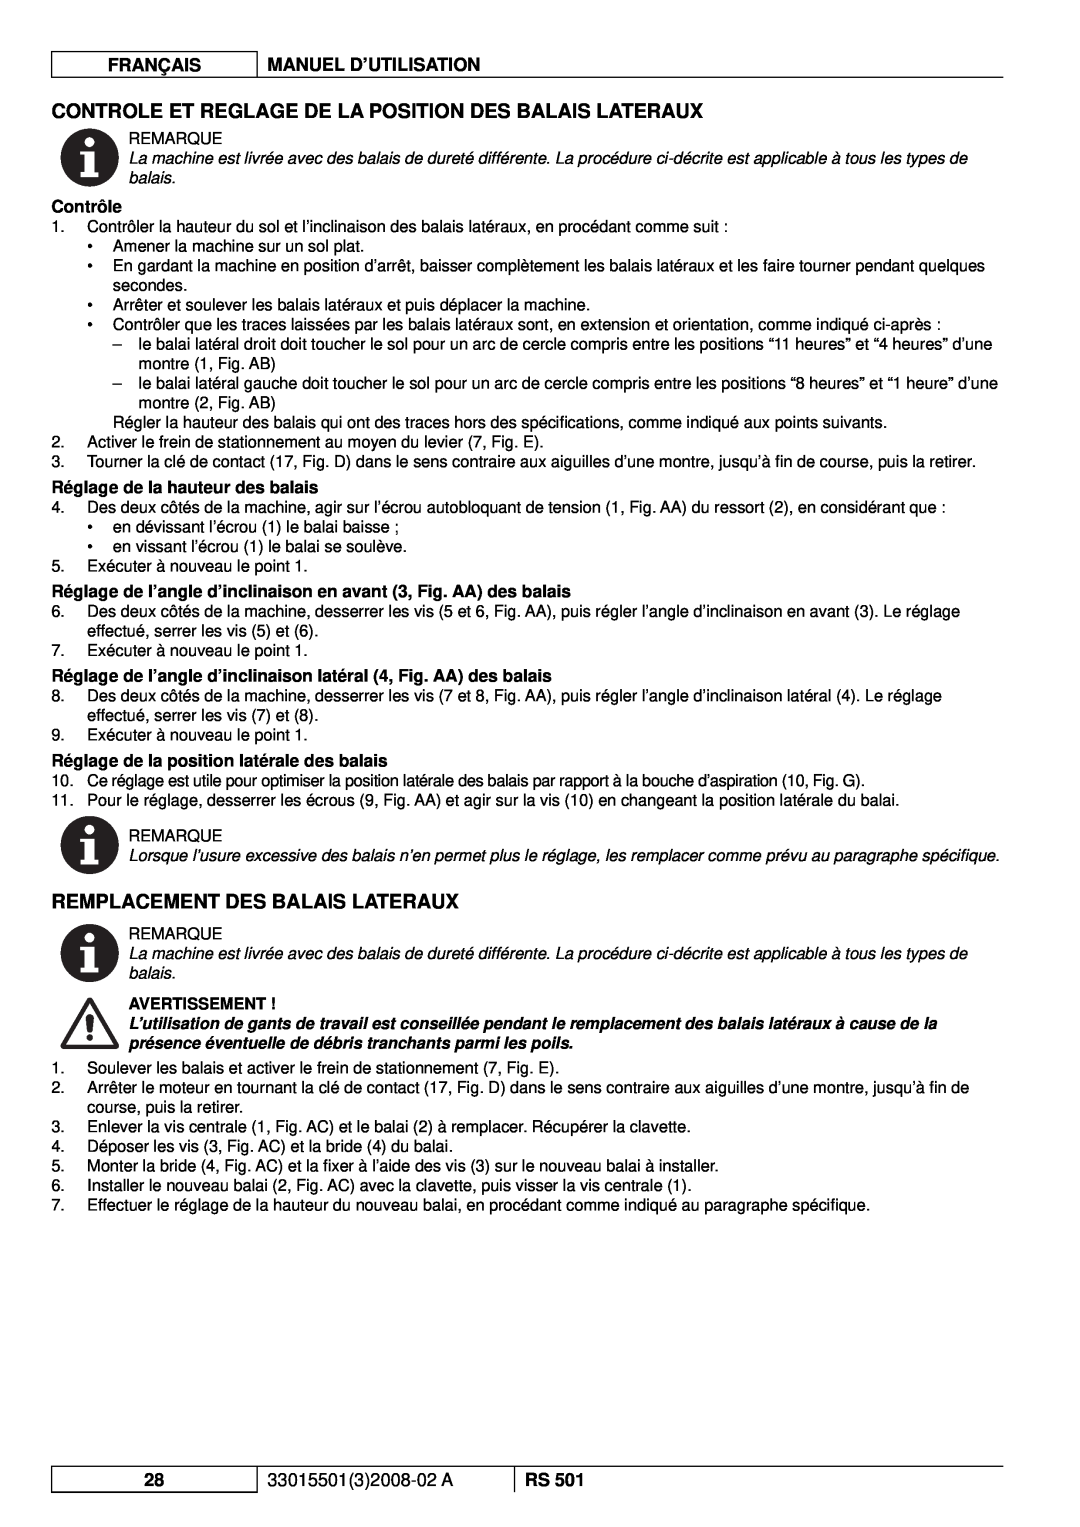 Nilfisk-ALTO RS 501 Remplacement Des Balais Lateraux, Contrôle, Réglage de la hauteur des balais, Français, Avertissement 